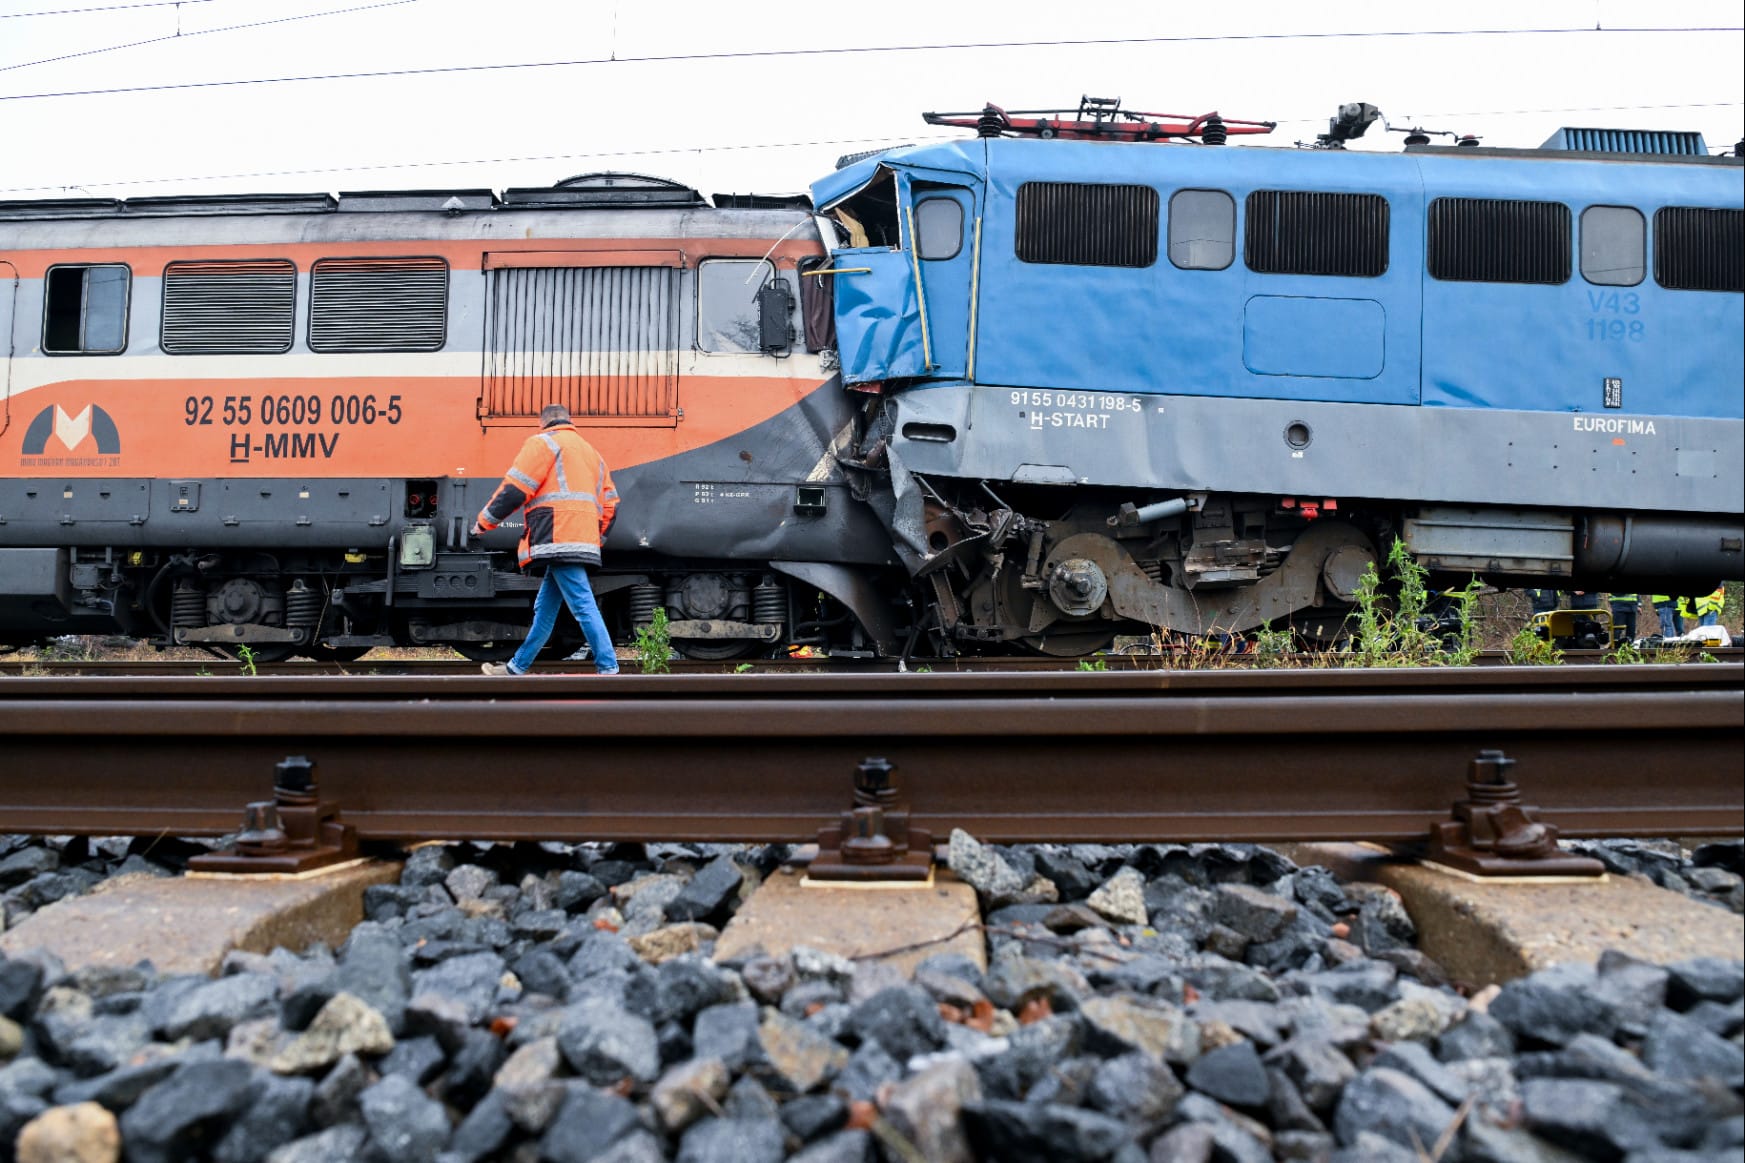 Küzdenek az orvosok a vétlen mozdonyvezető életéért Fotó: MTI/Czeglédi Zsolt